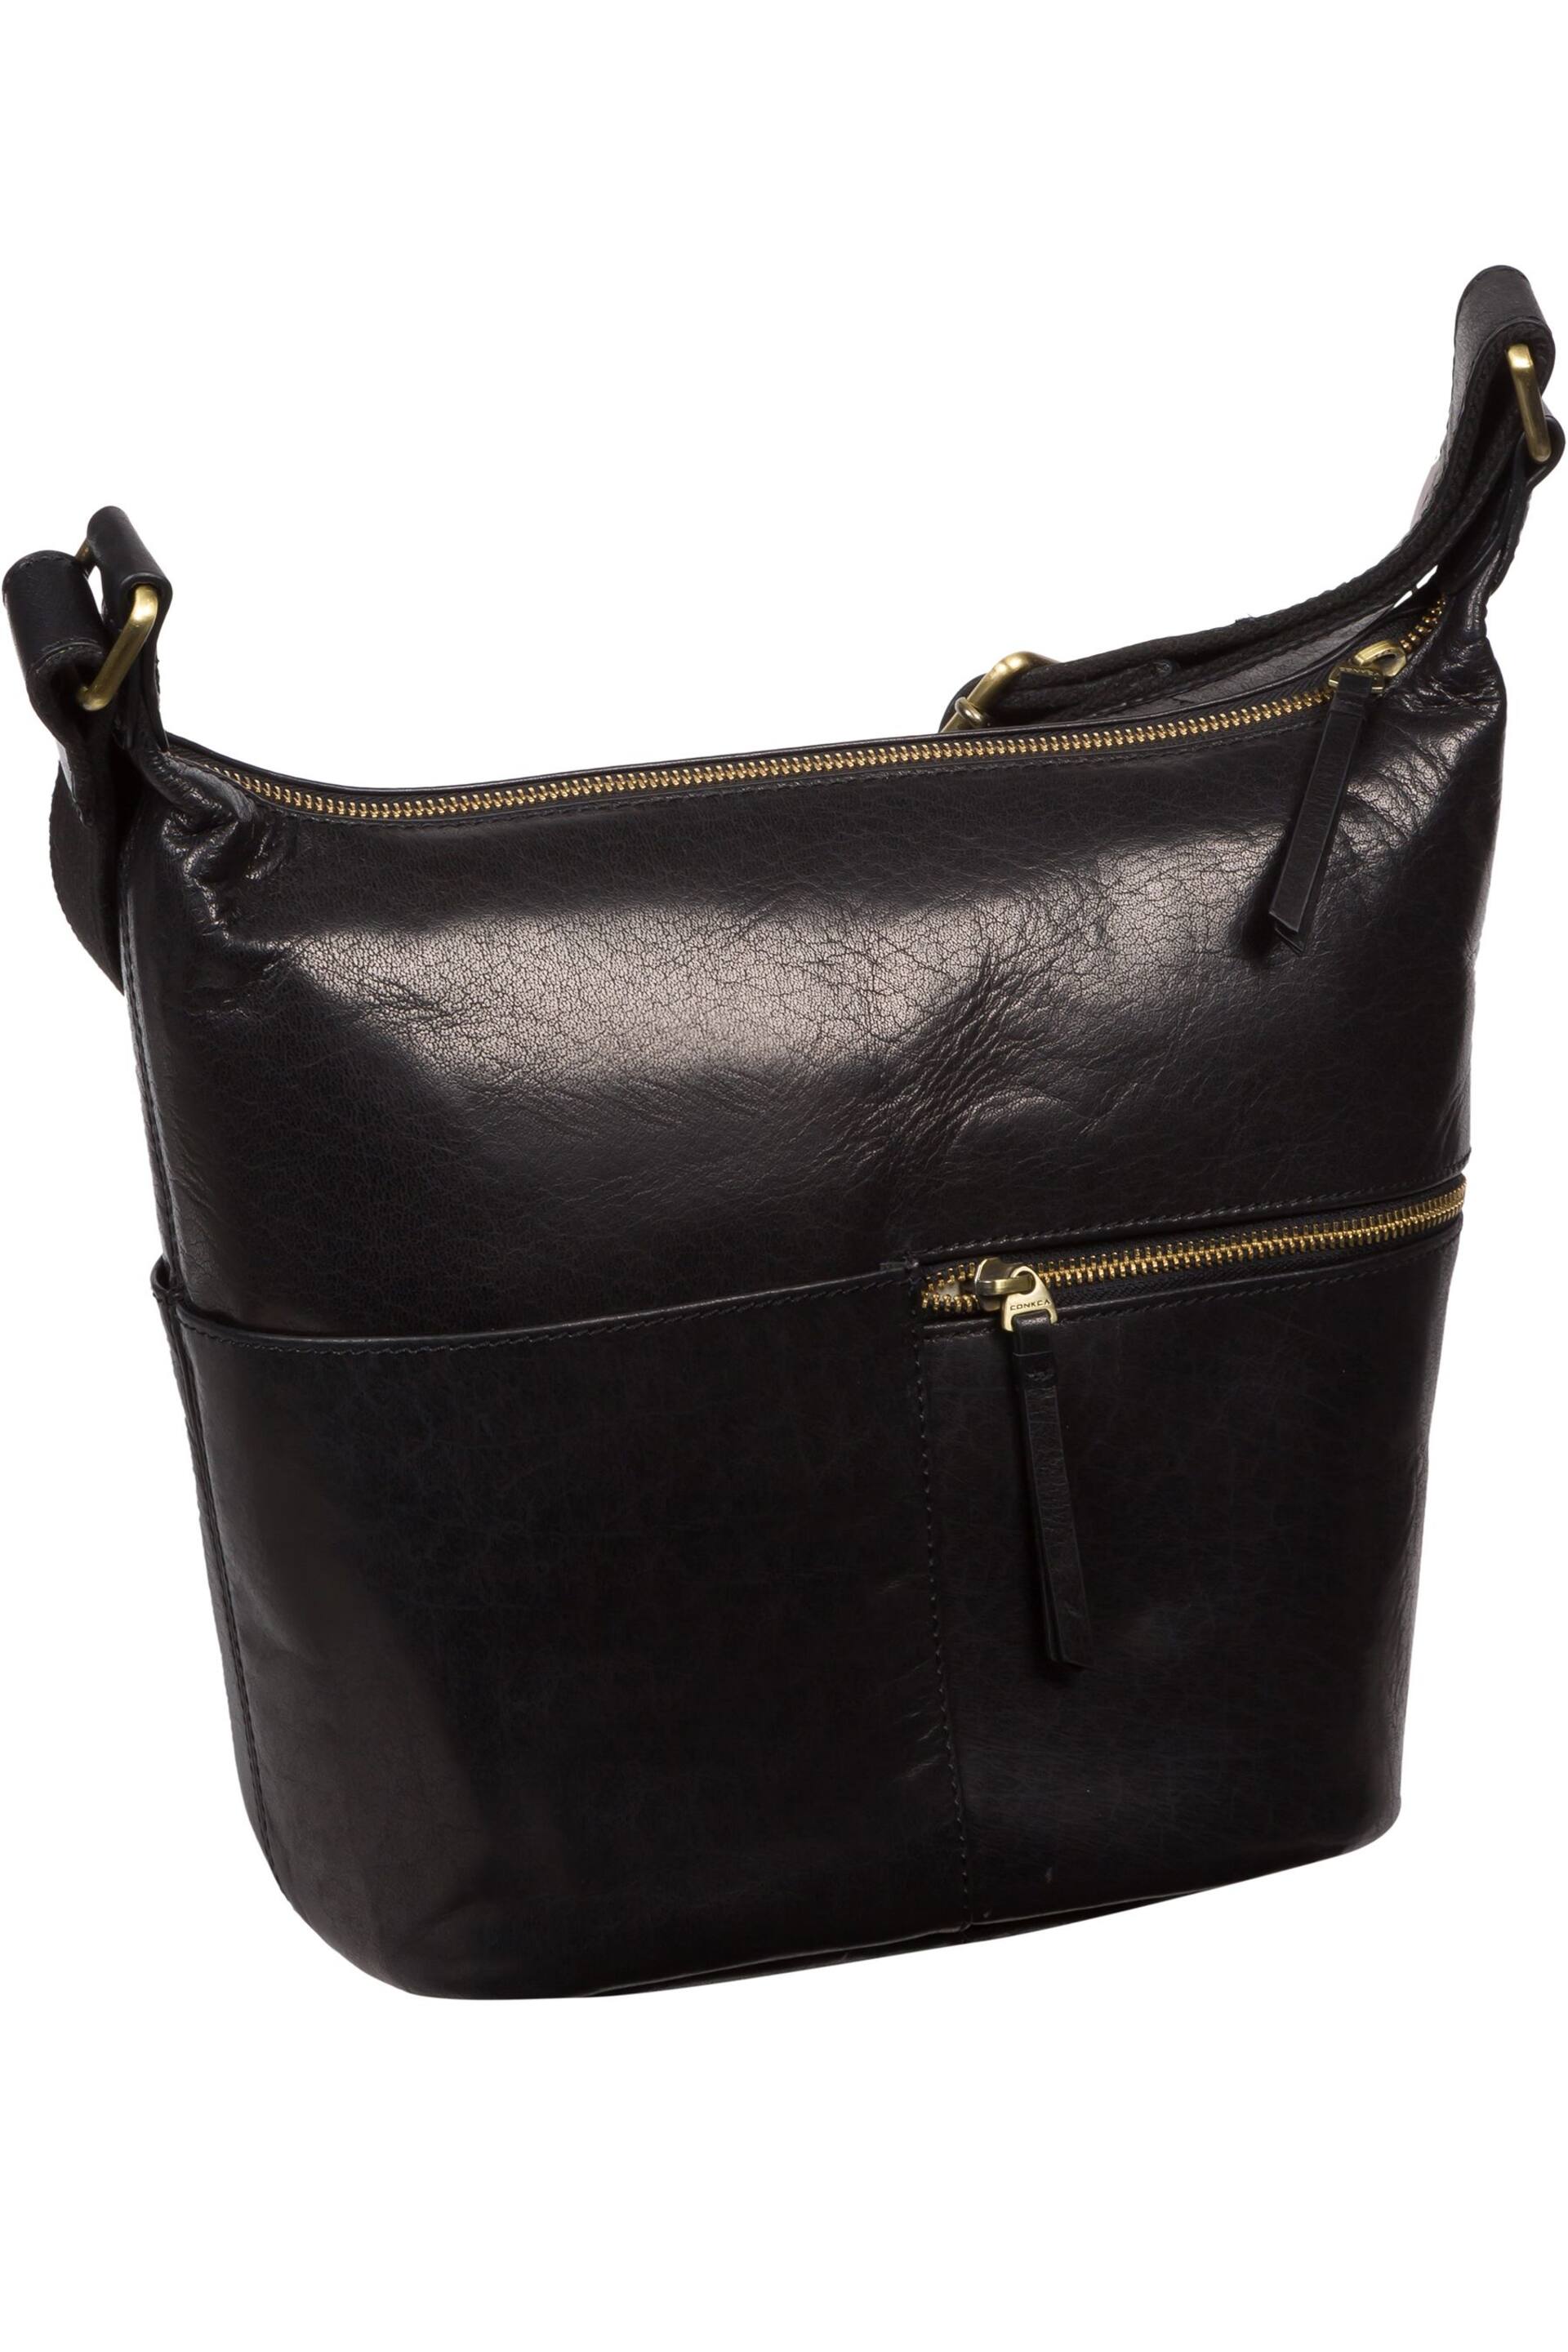 Conkca Kristin Leather Shoulder Bag - Image 3 of 6